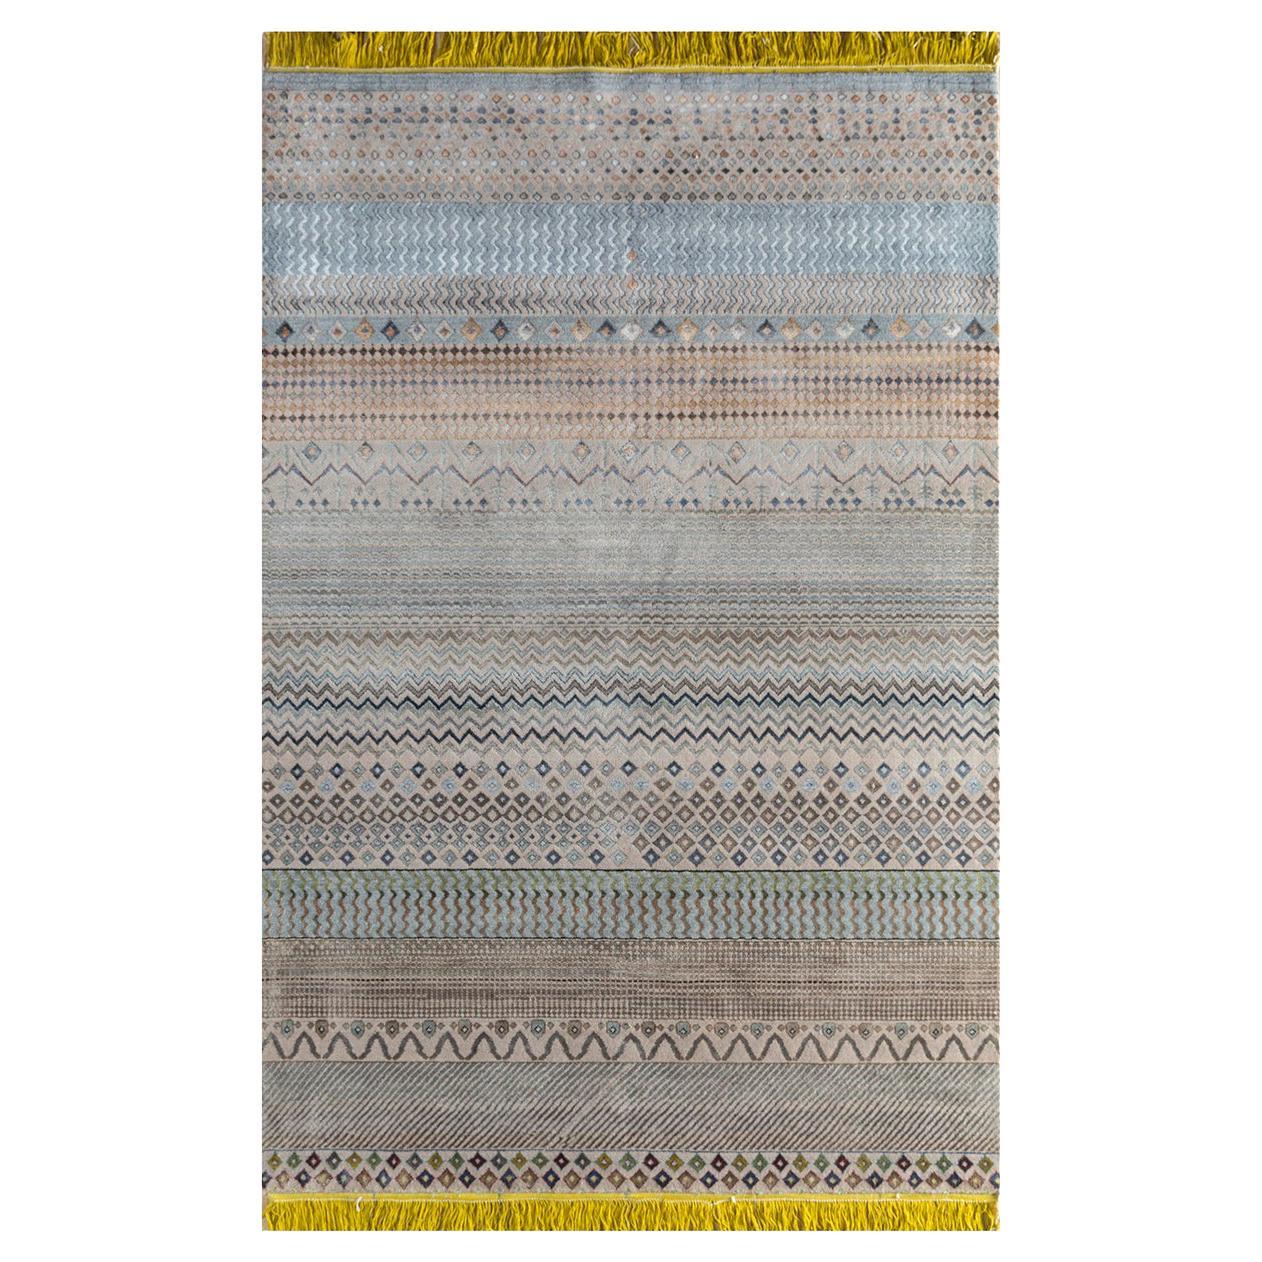 Tapis Do Hanso Ka Joda unique, noué, en laine, soie de bambou, 180 x 270 cm